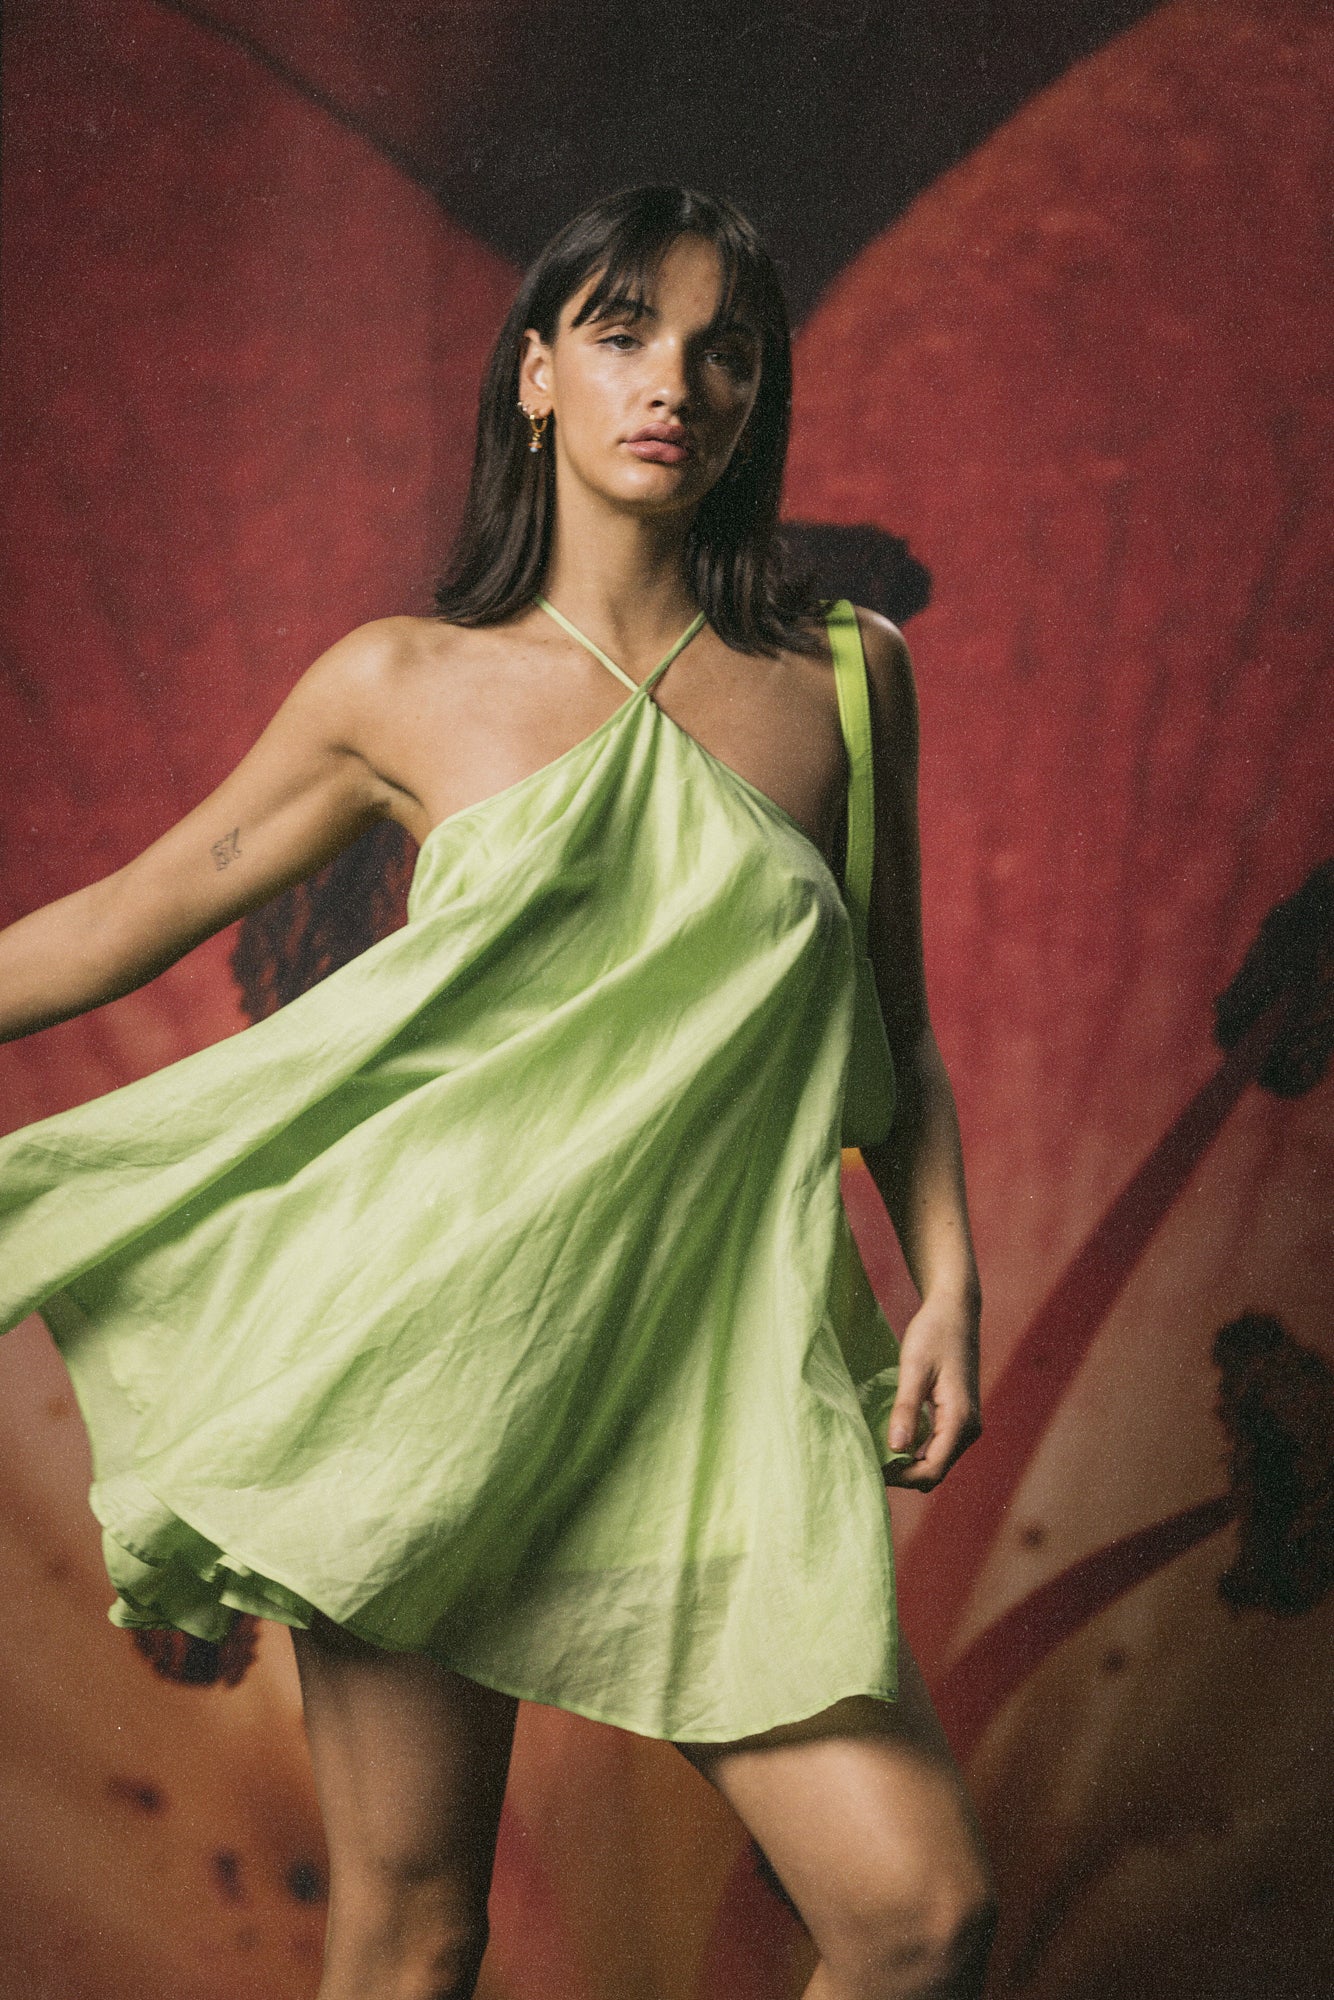 Lolana Dress - Lime